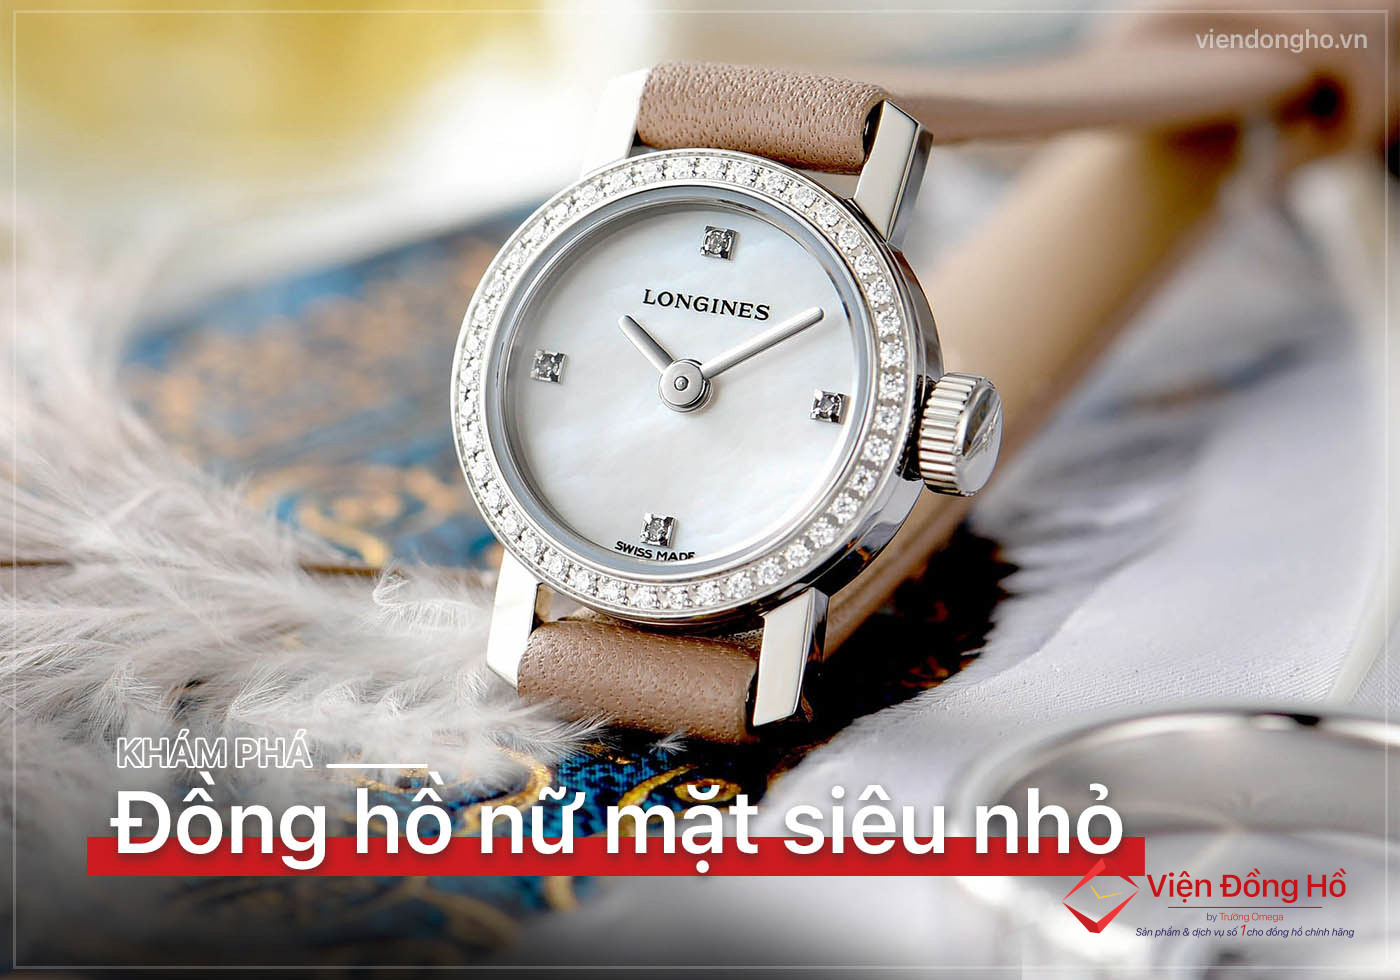 Đồng hồ thời trang Guess Nữ mặt vuông (GV001) - Yeudongho.net